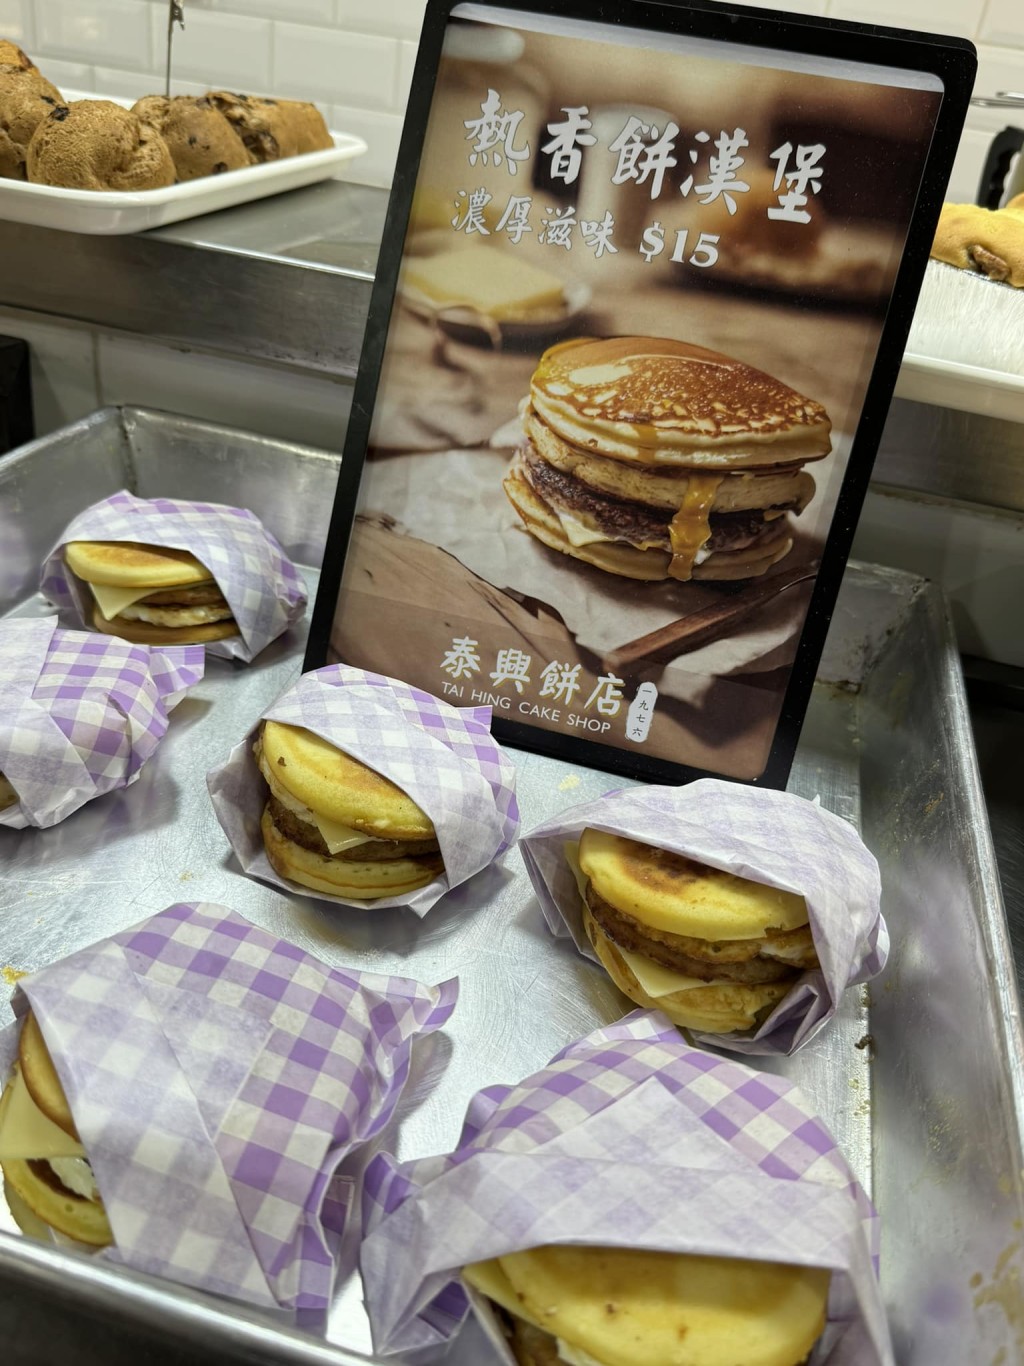 近日有网民发现有荃湾饼店「泰兴饼店」推出「热香饼汉堡。